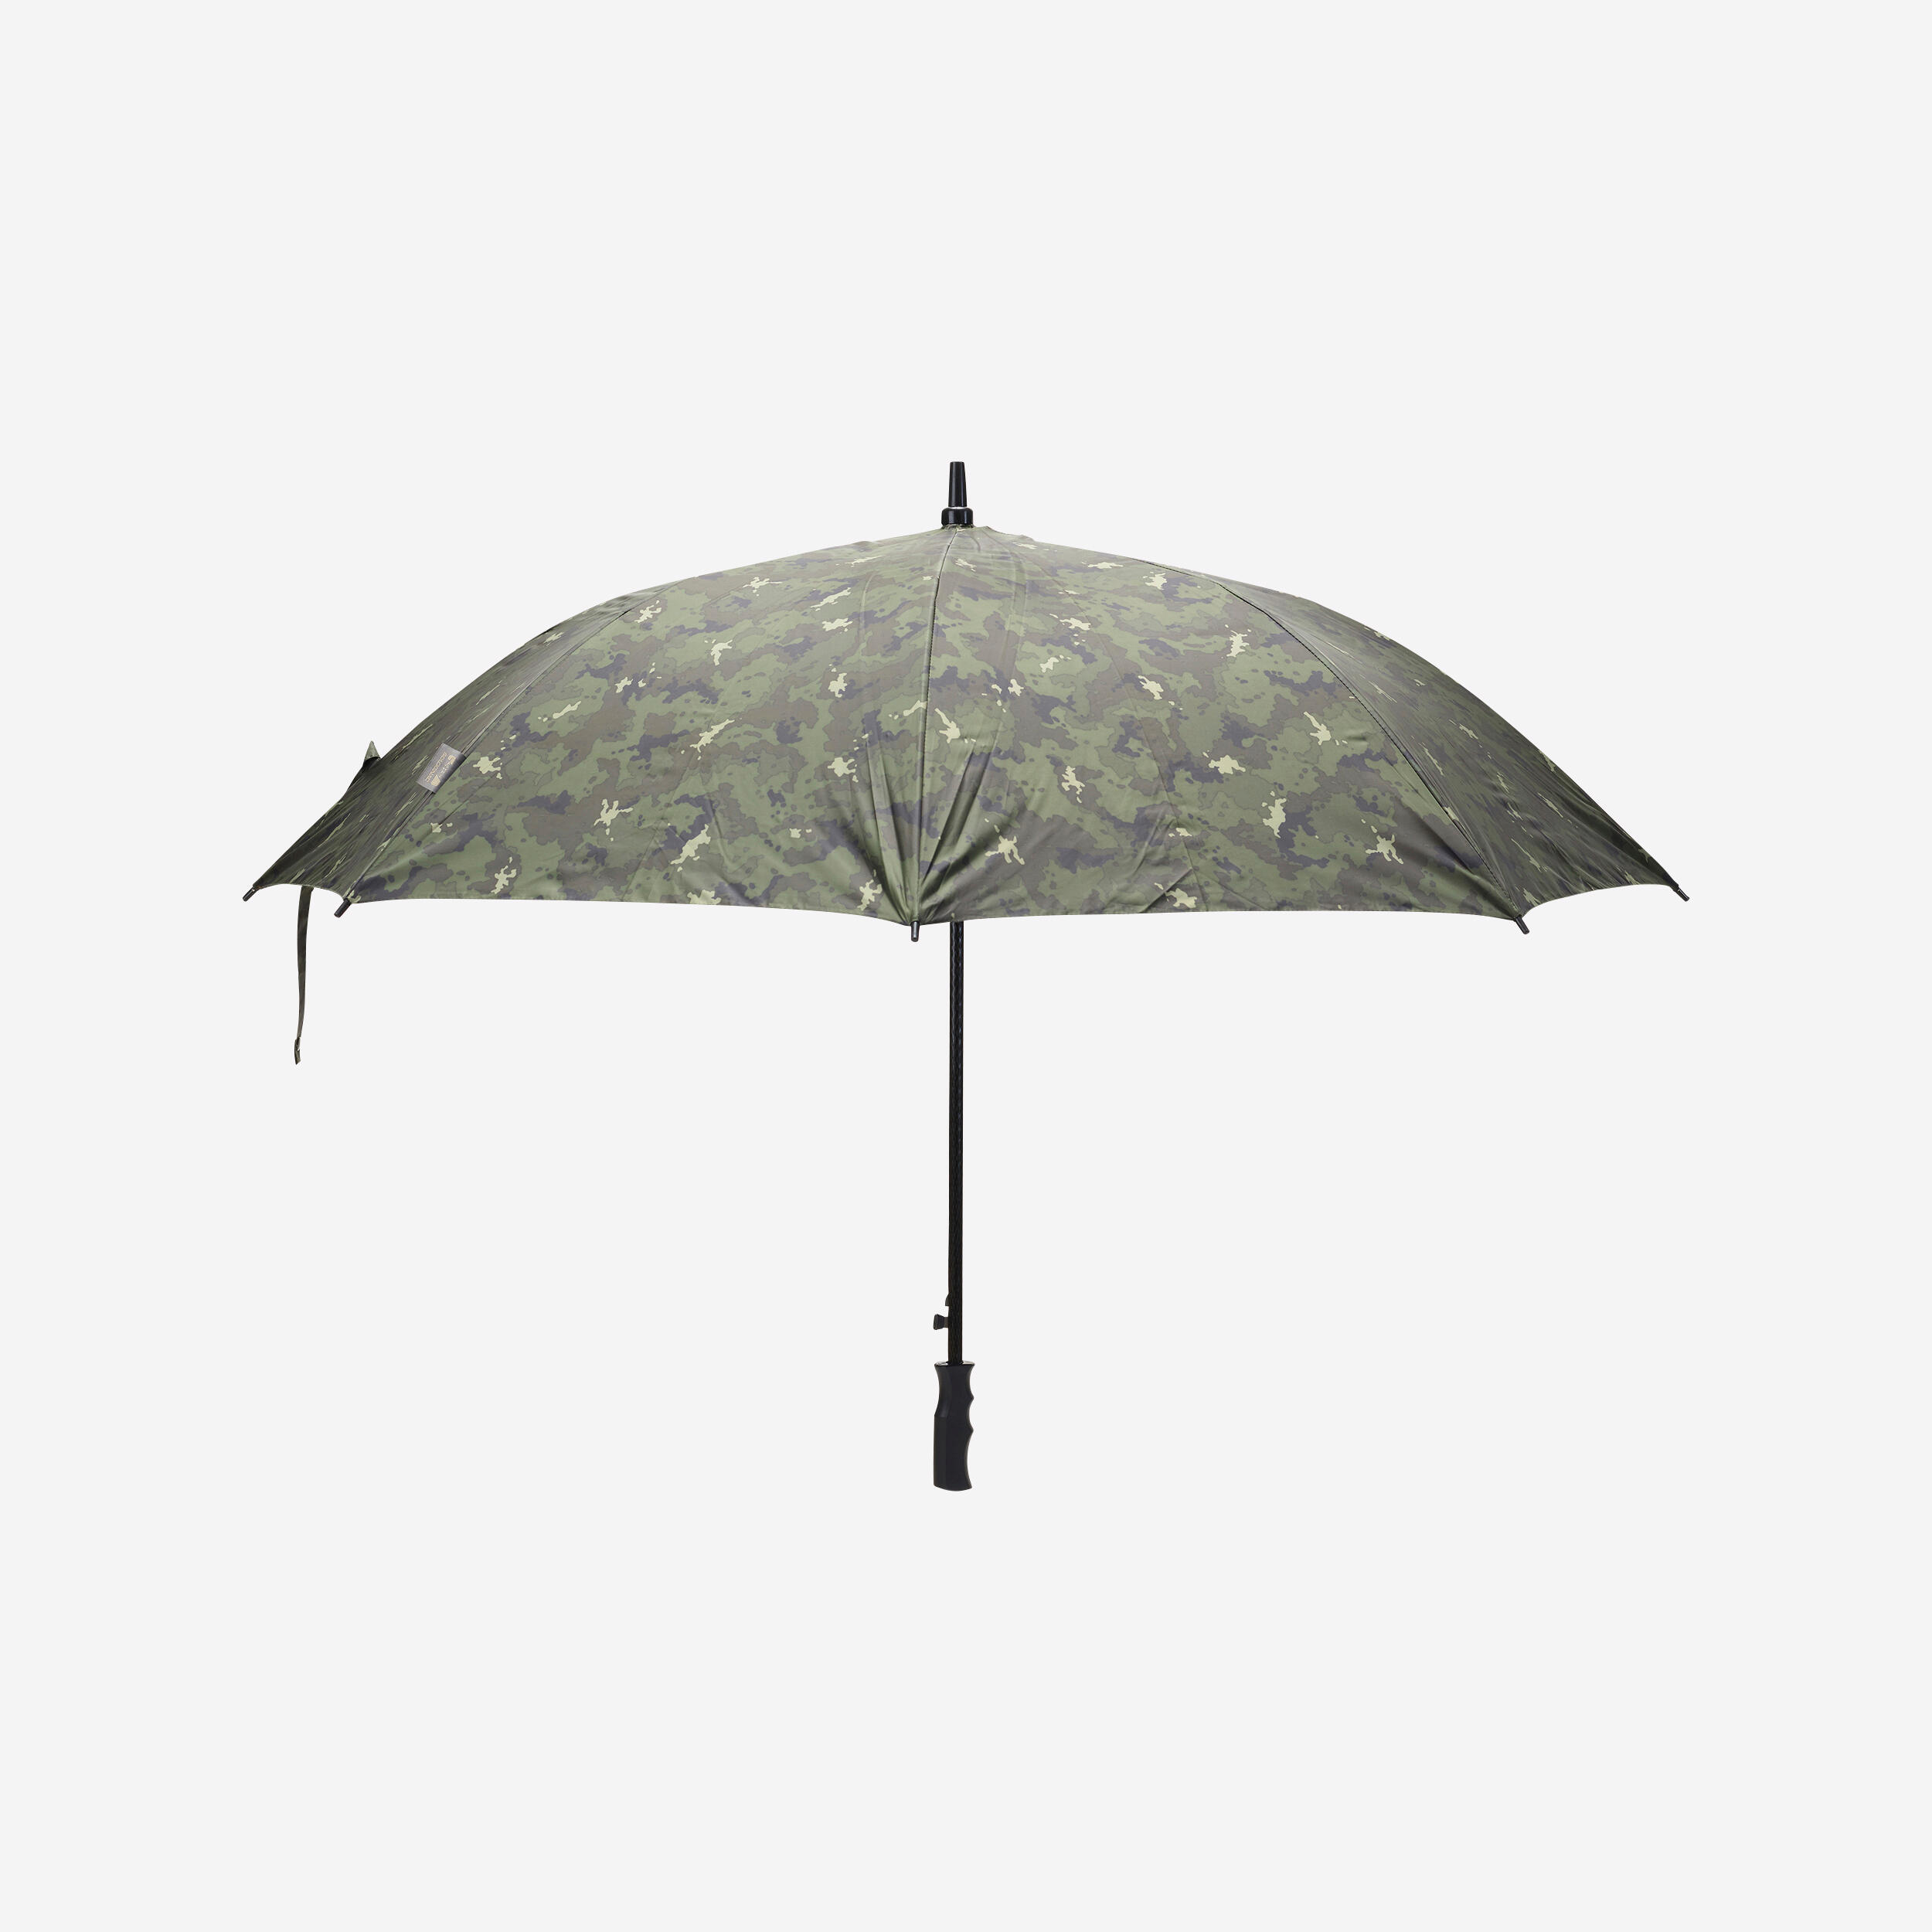 Camouflage Umbrellas - Buy Army 